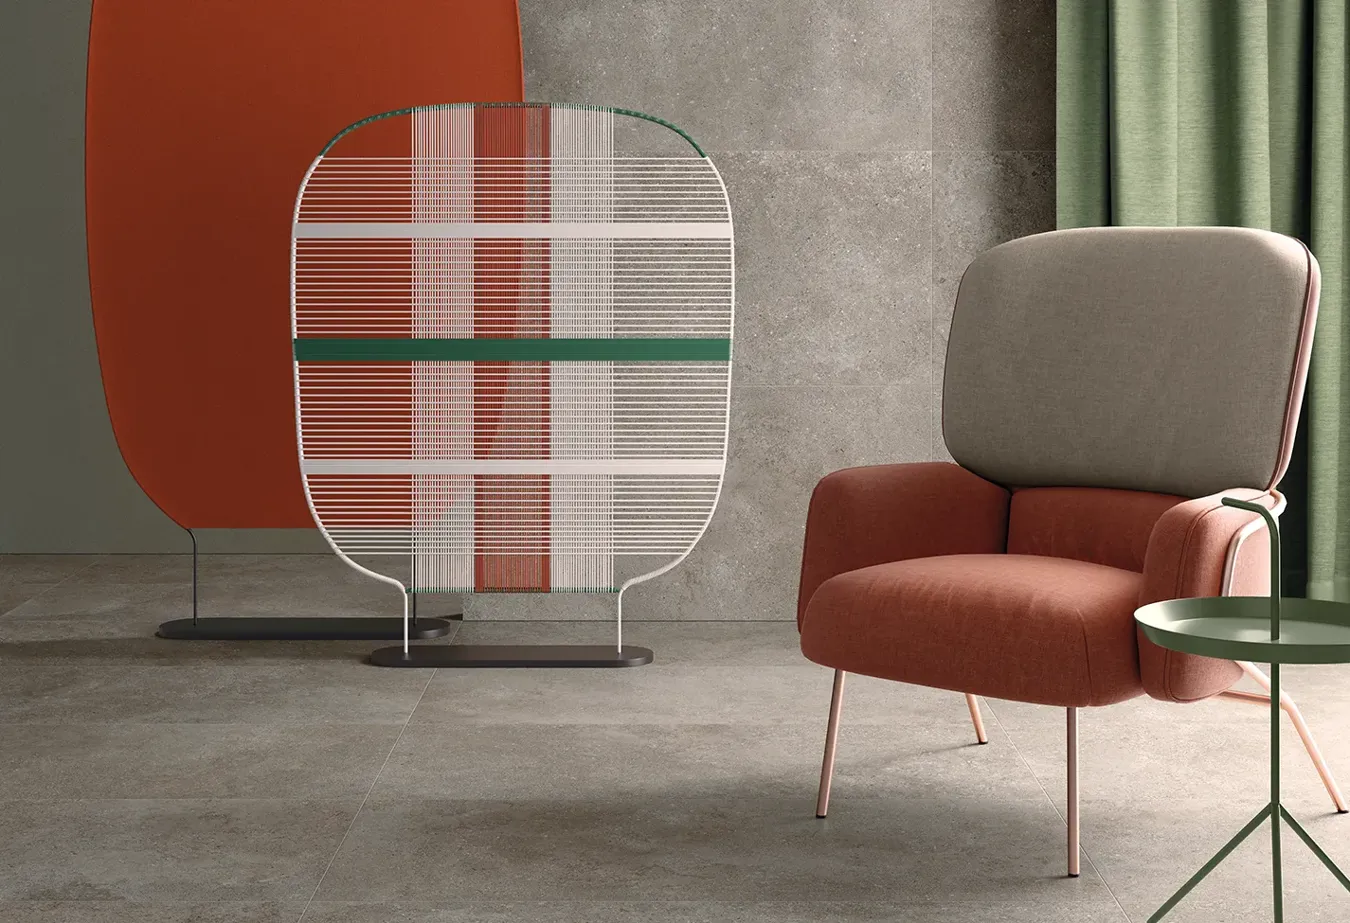 Современное пространство с плиткой из коллекции Brystone цвета Avana, художественной перегородкой и дизайнерским креслом.